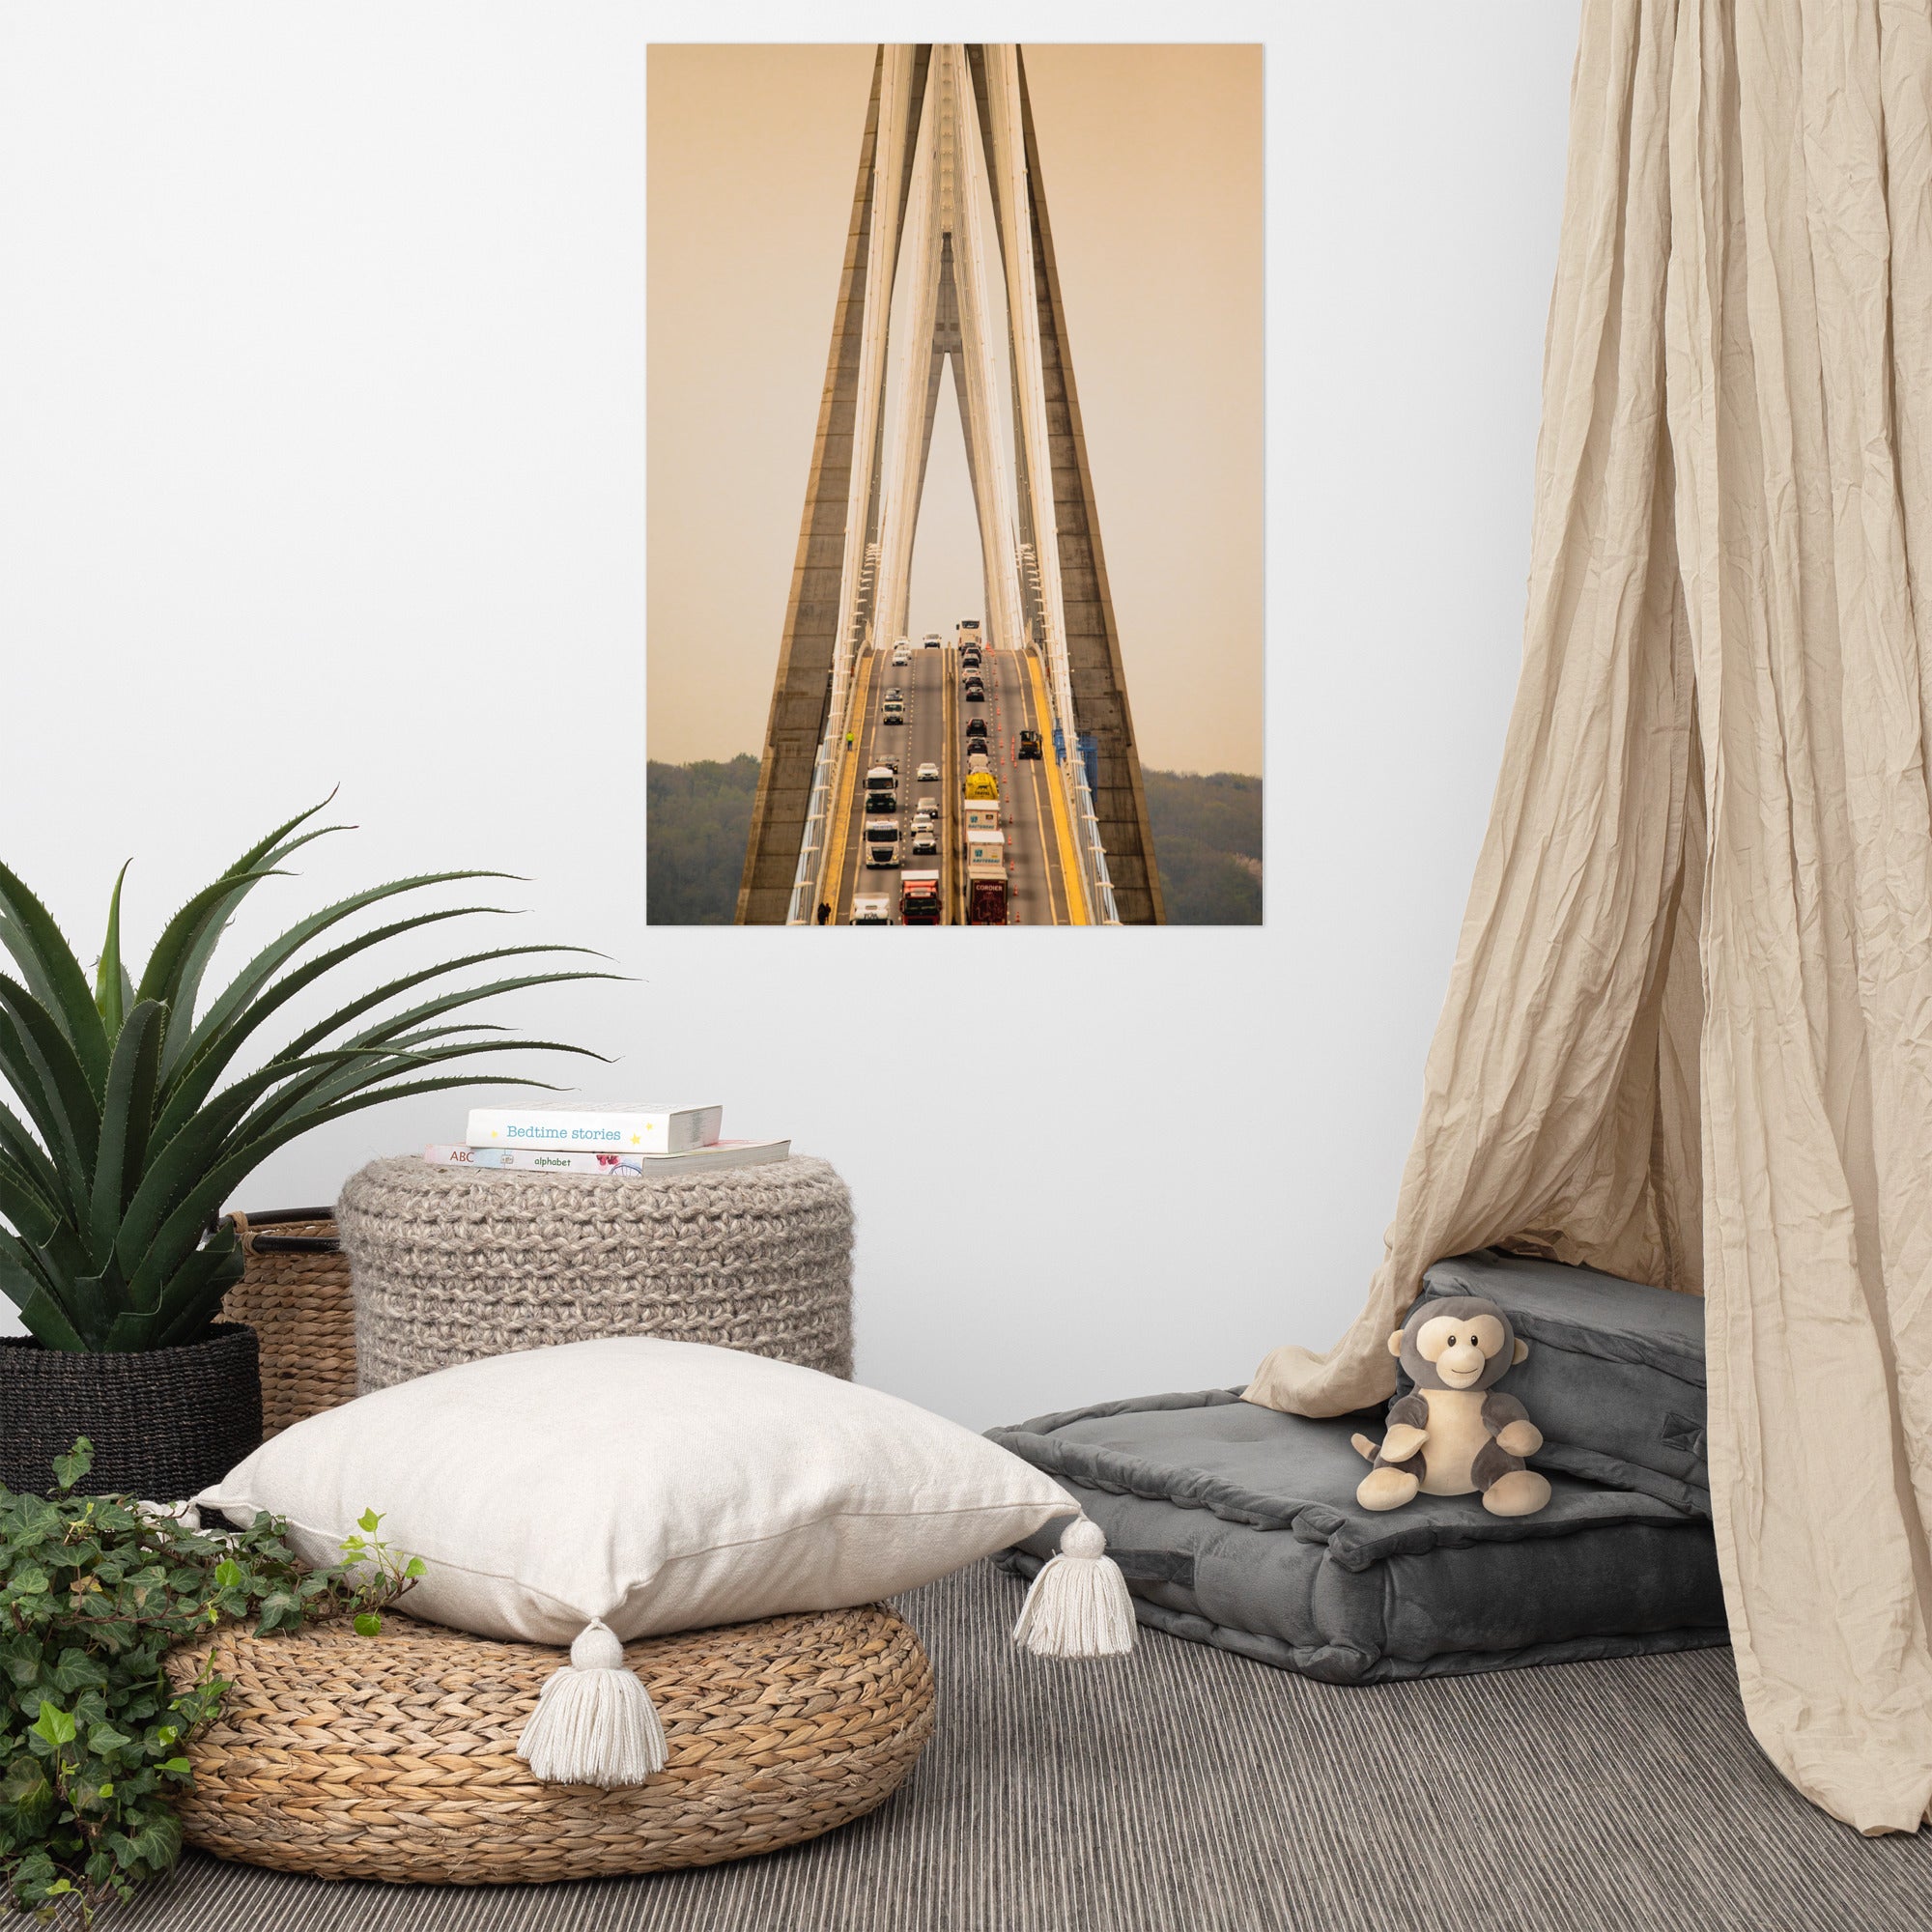 Poster Pont de Normandie - Une représentation artistique de ce chef-d'œuvre architectural, symbole de l'élégance normande.